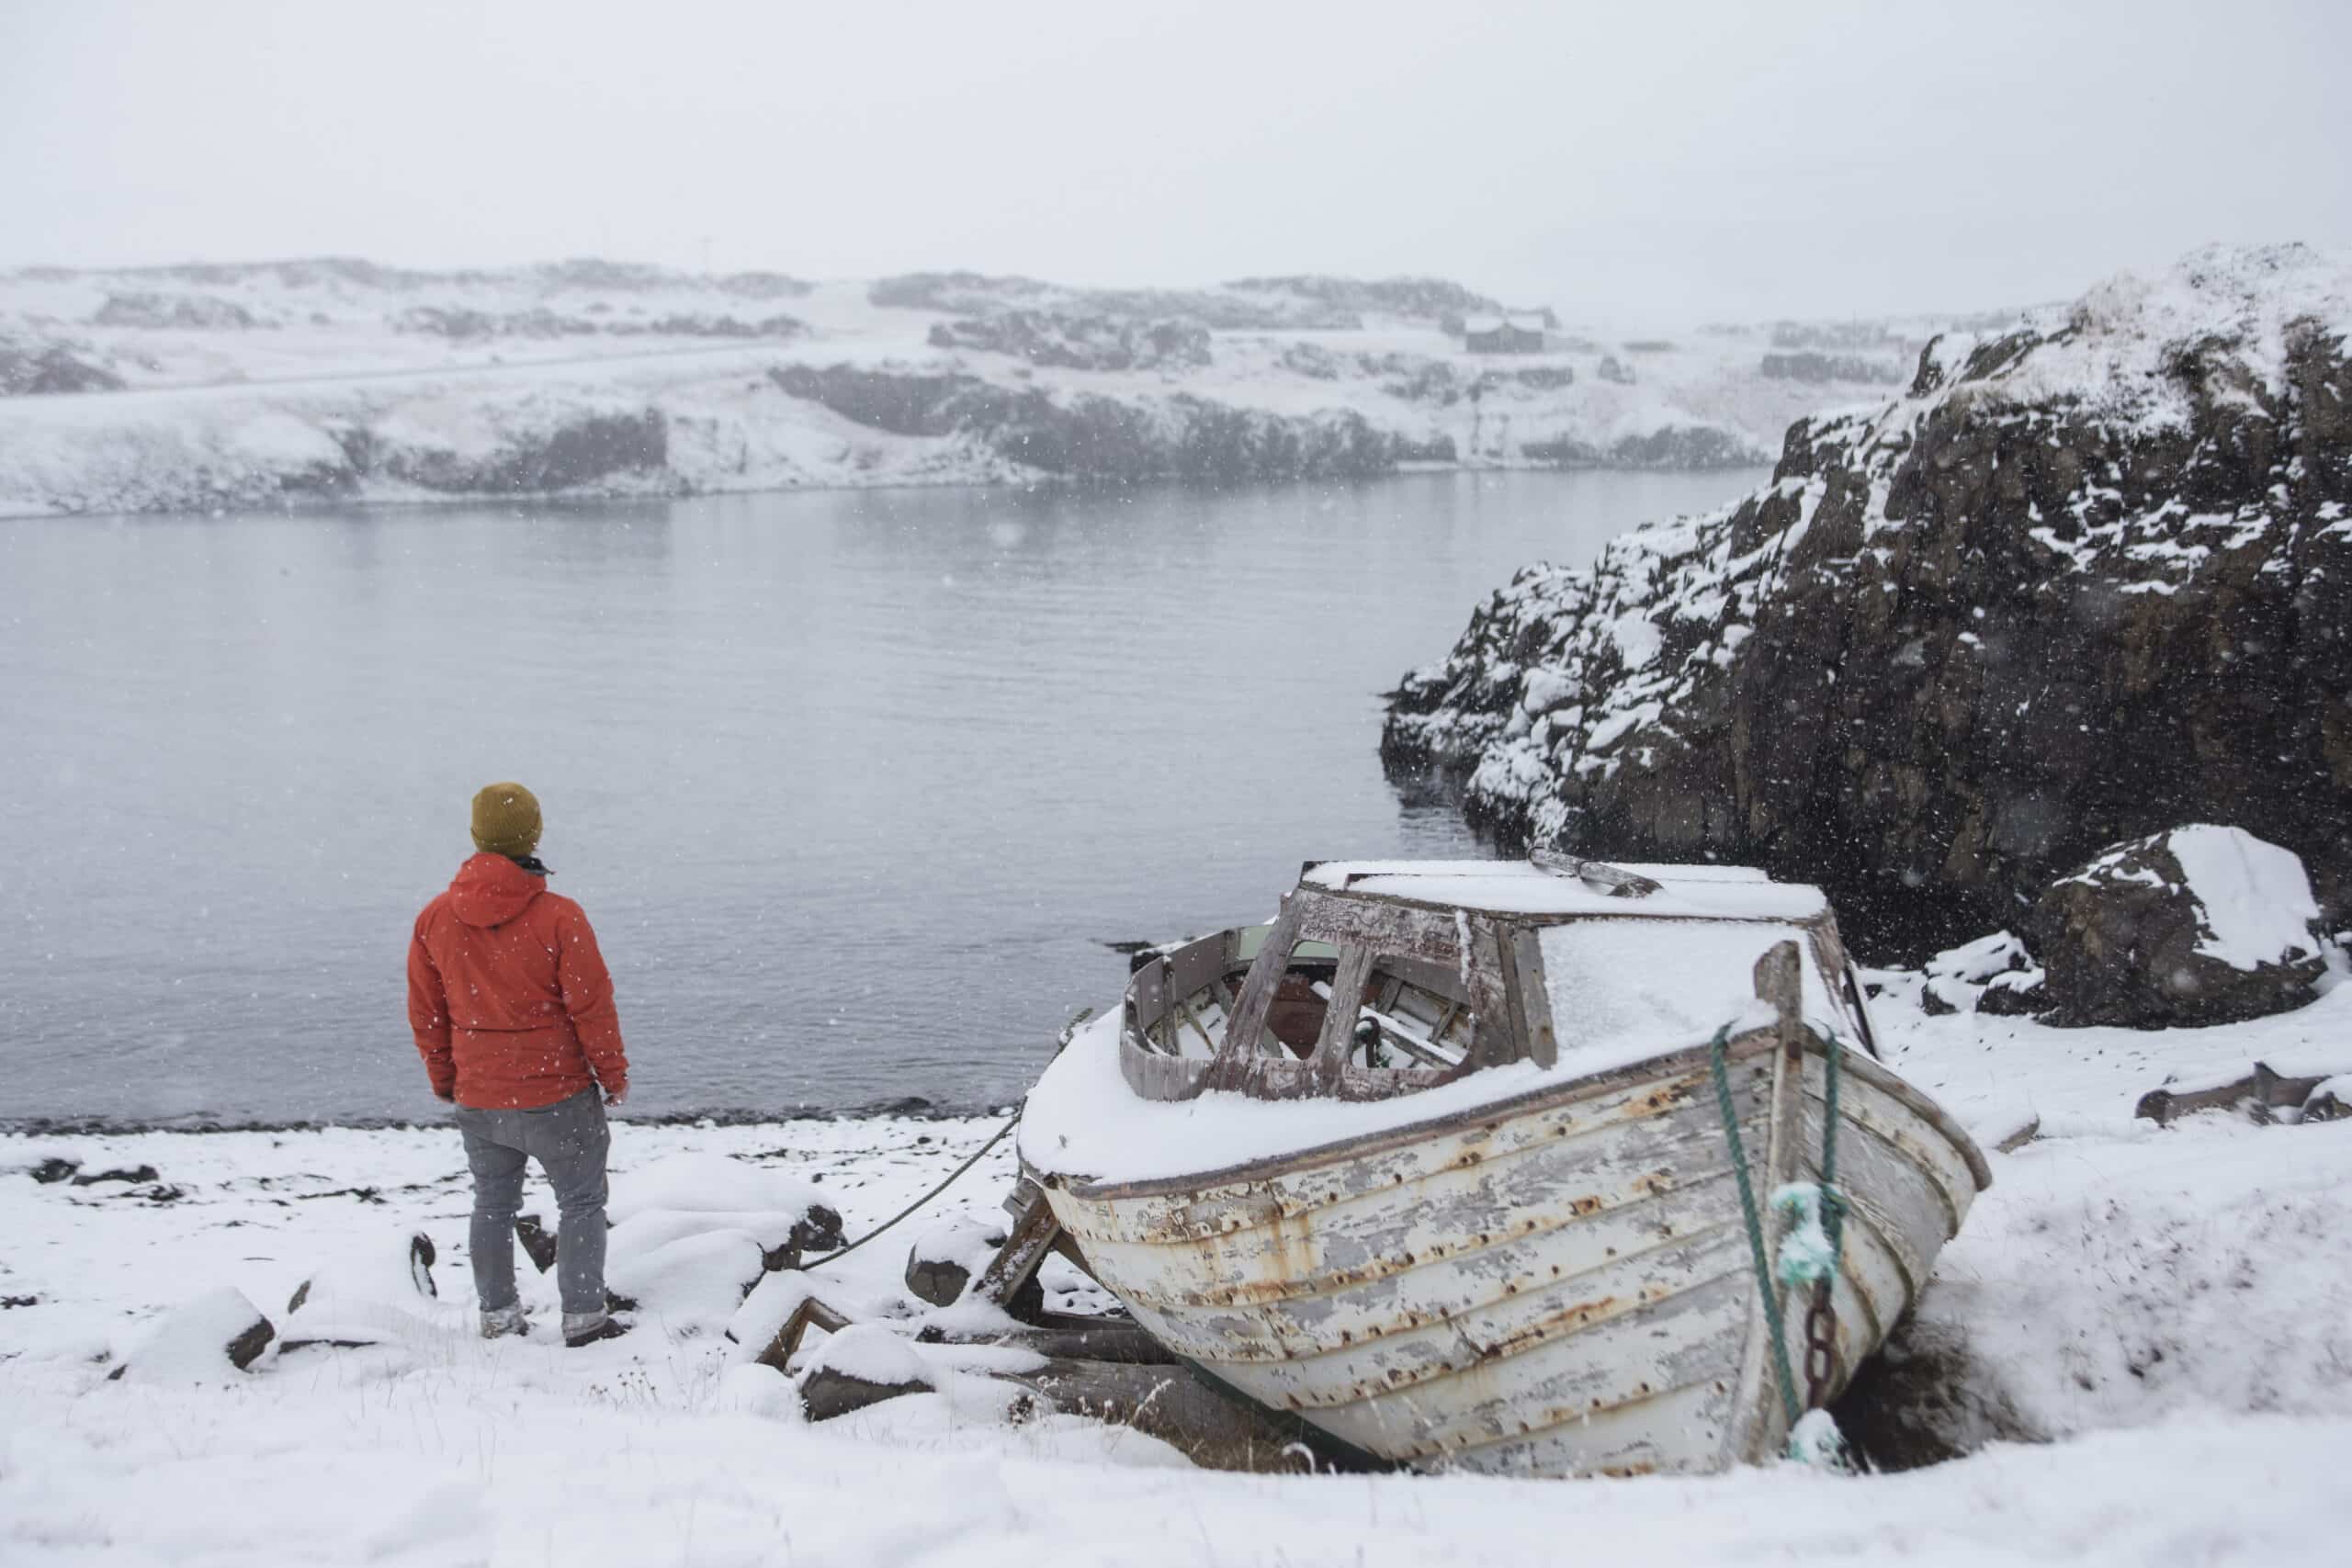 Un homme à côté d'un bateau au bord d'un lac en Islande, de la neige partout, une scène hivernale.